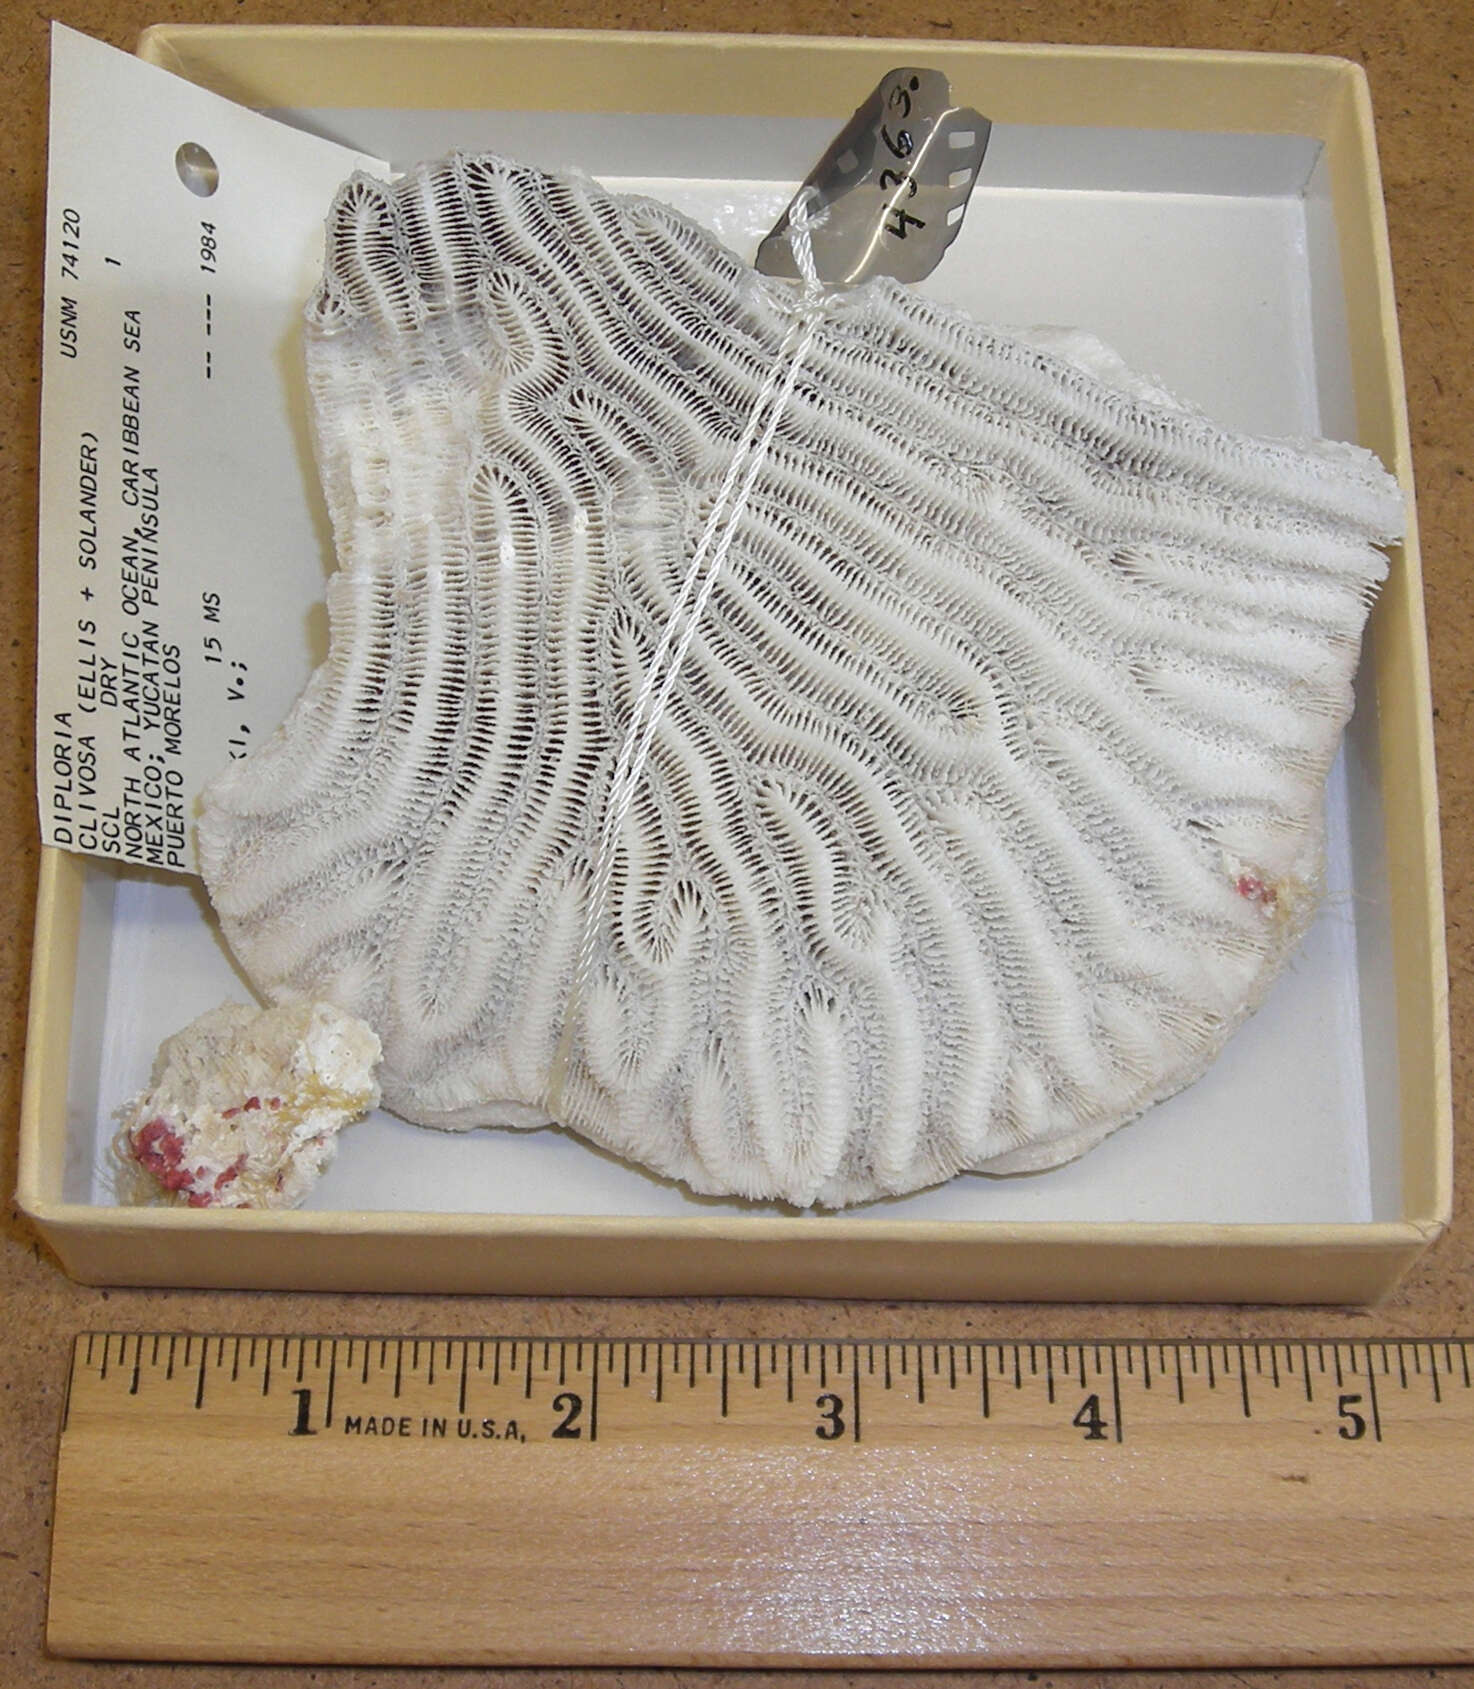 Image of Pseudodiploria Fukami, Budd & Knowlton 2012